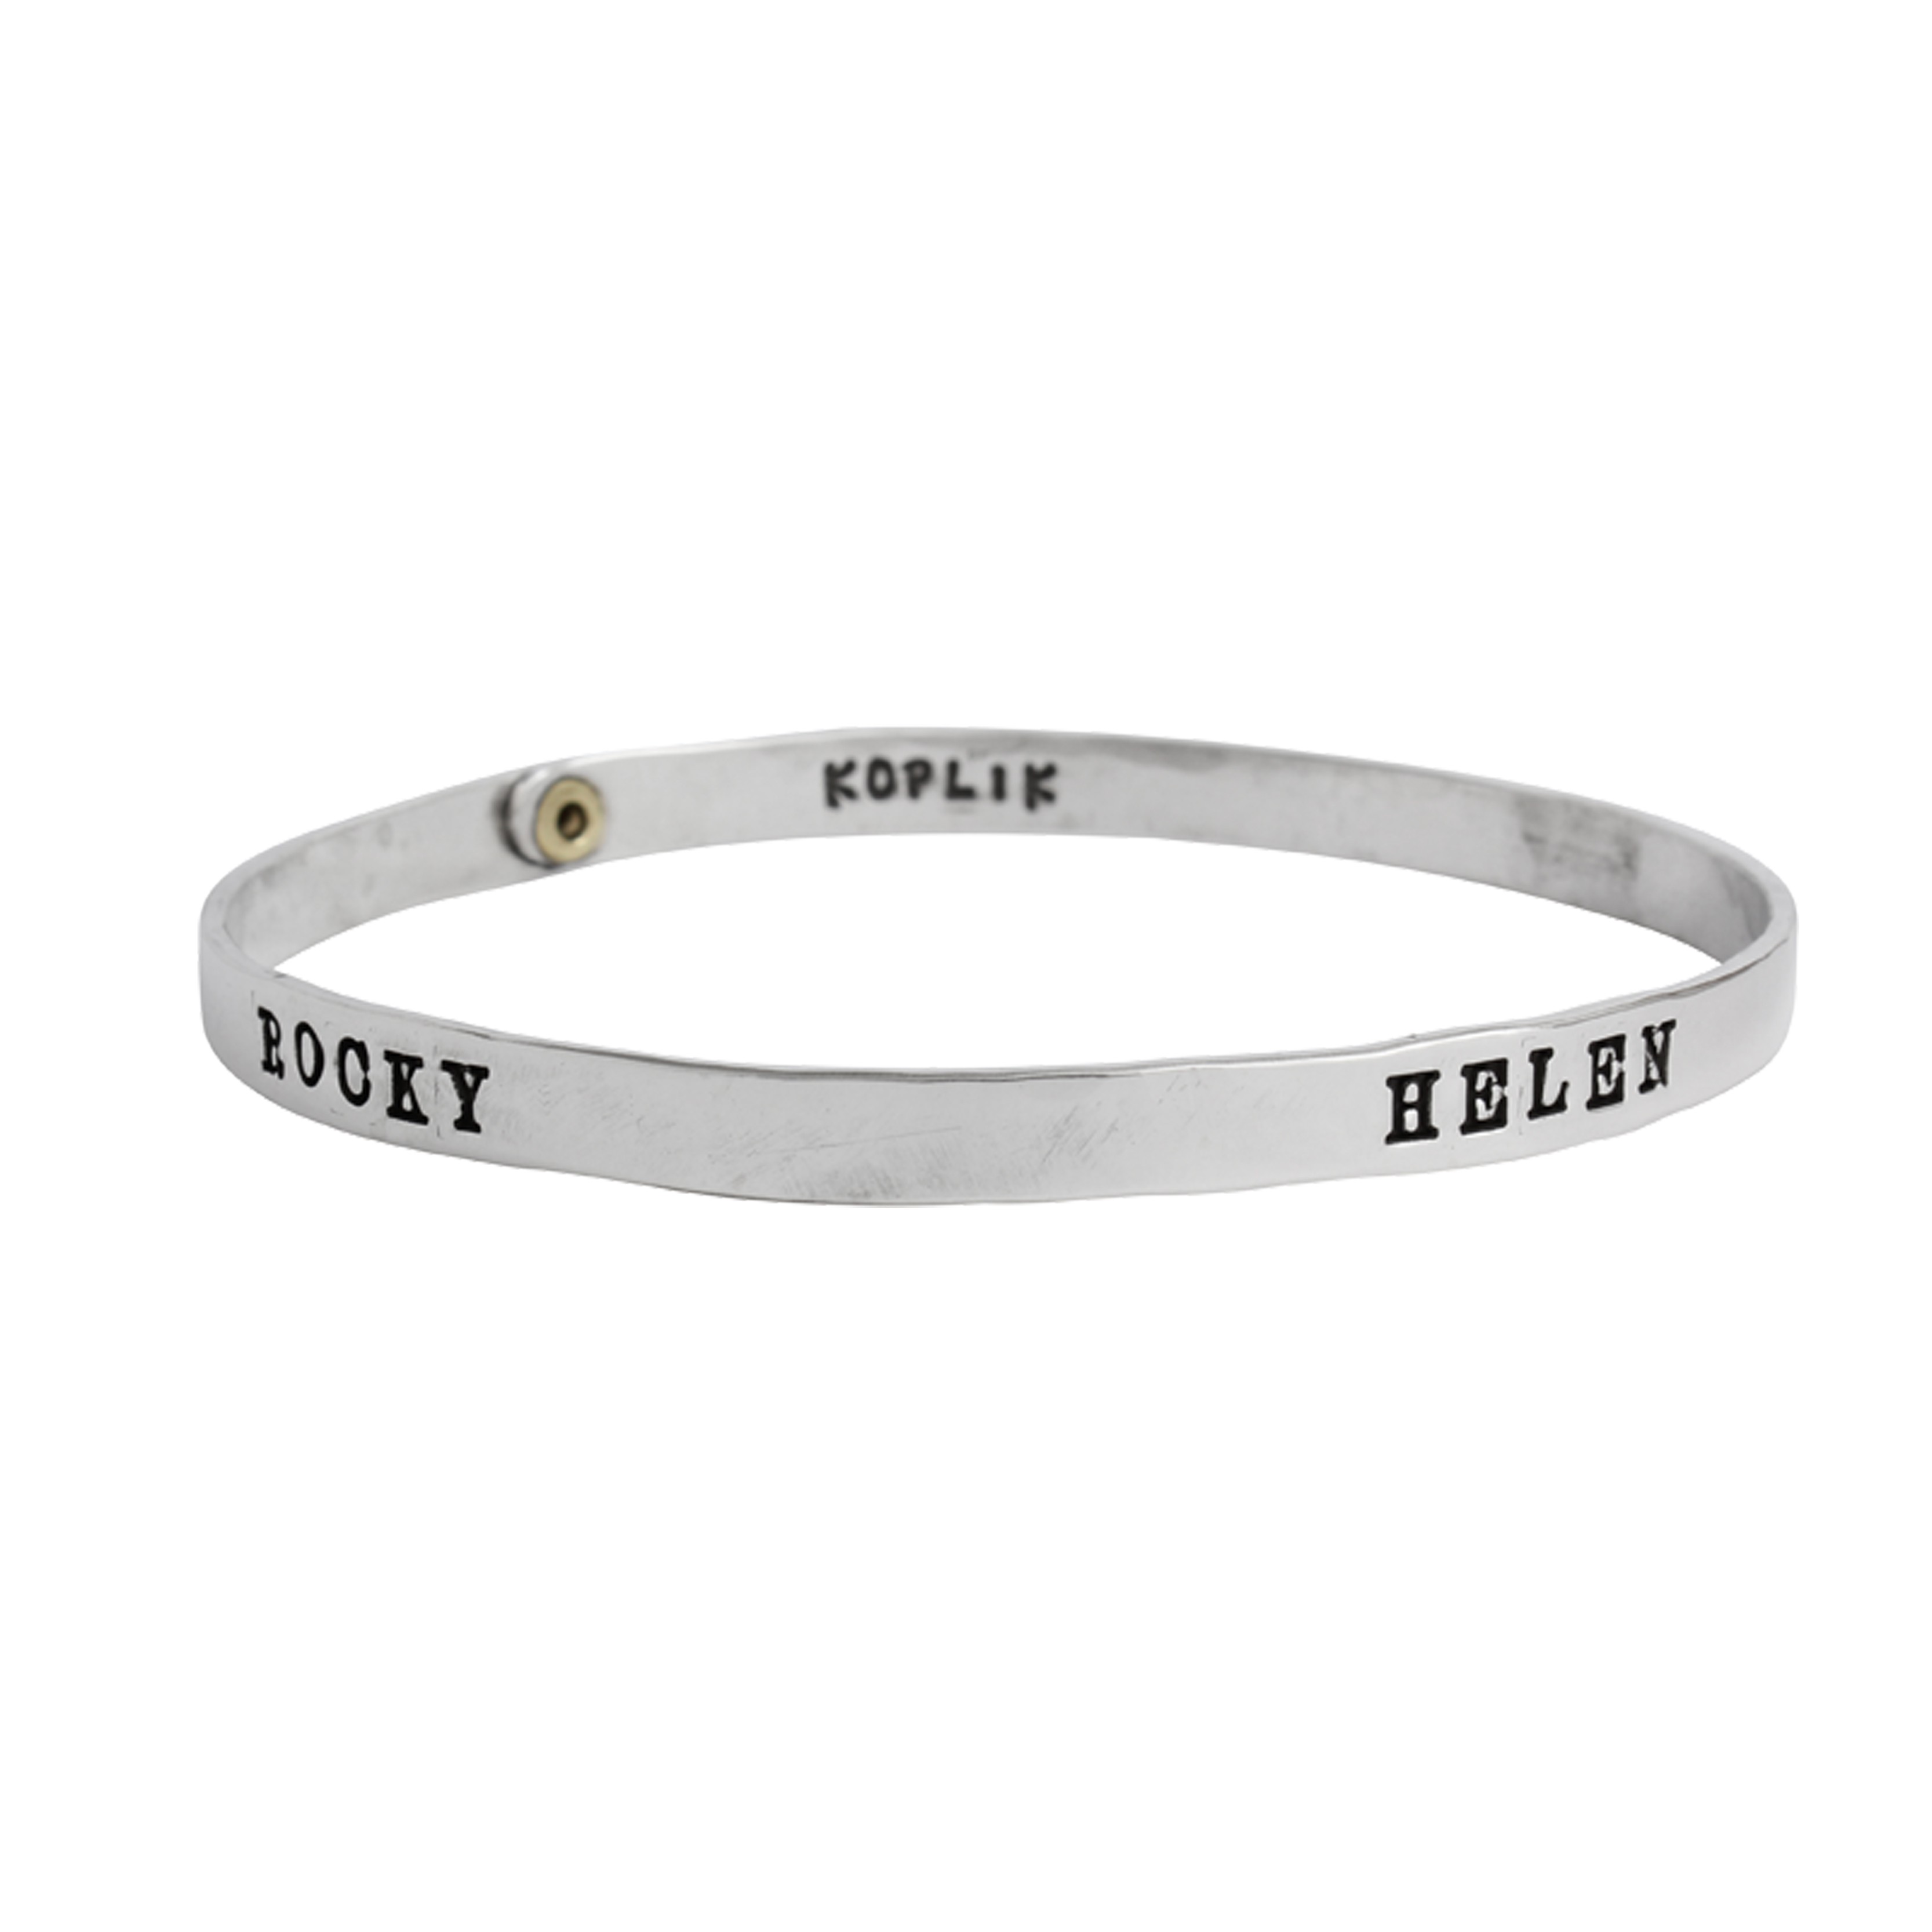 Bangle bracelet for grandma - Family bracelet